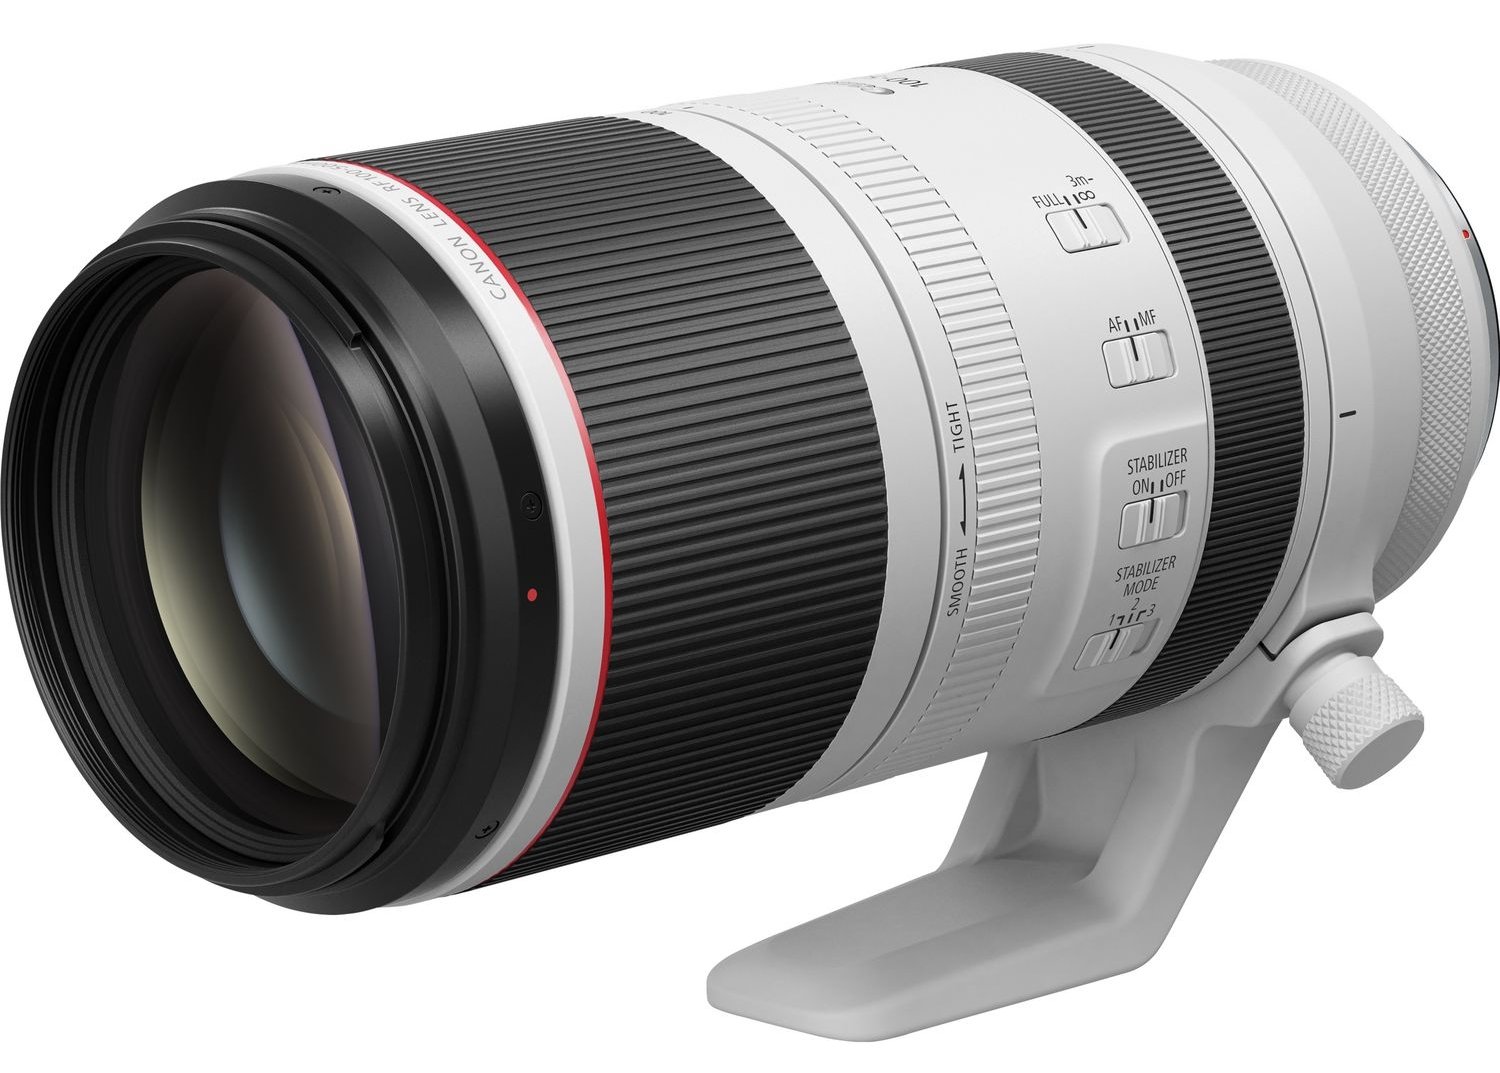 Ống kính Canon rf 100-500 mm f4.5-7.1 L IS USM - Tiêu cự siêu zoom